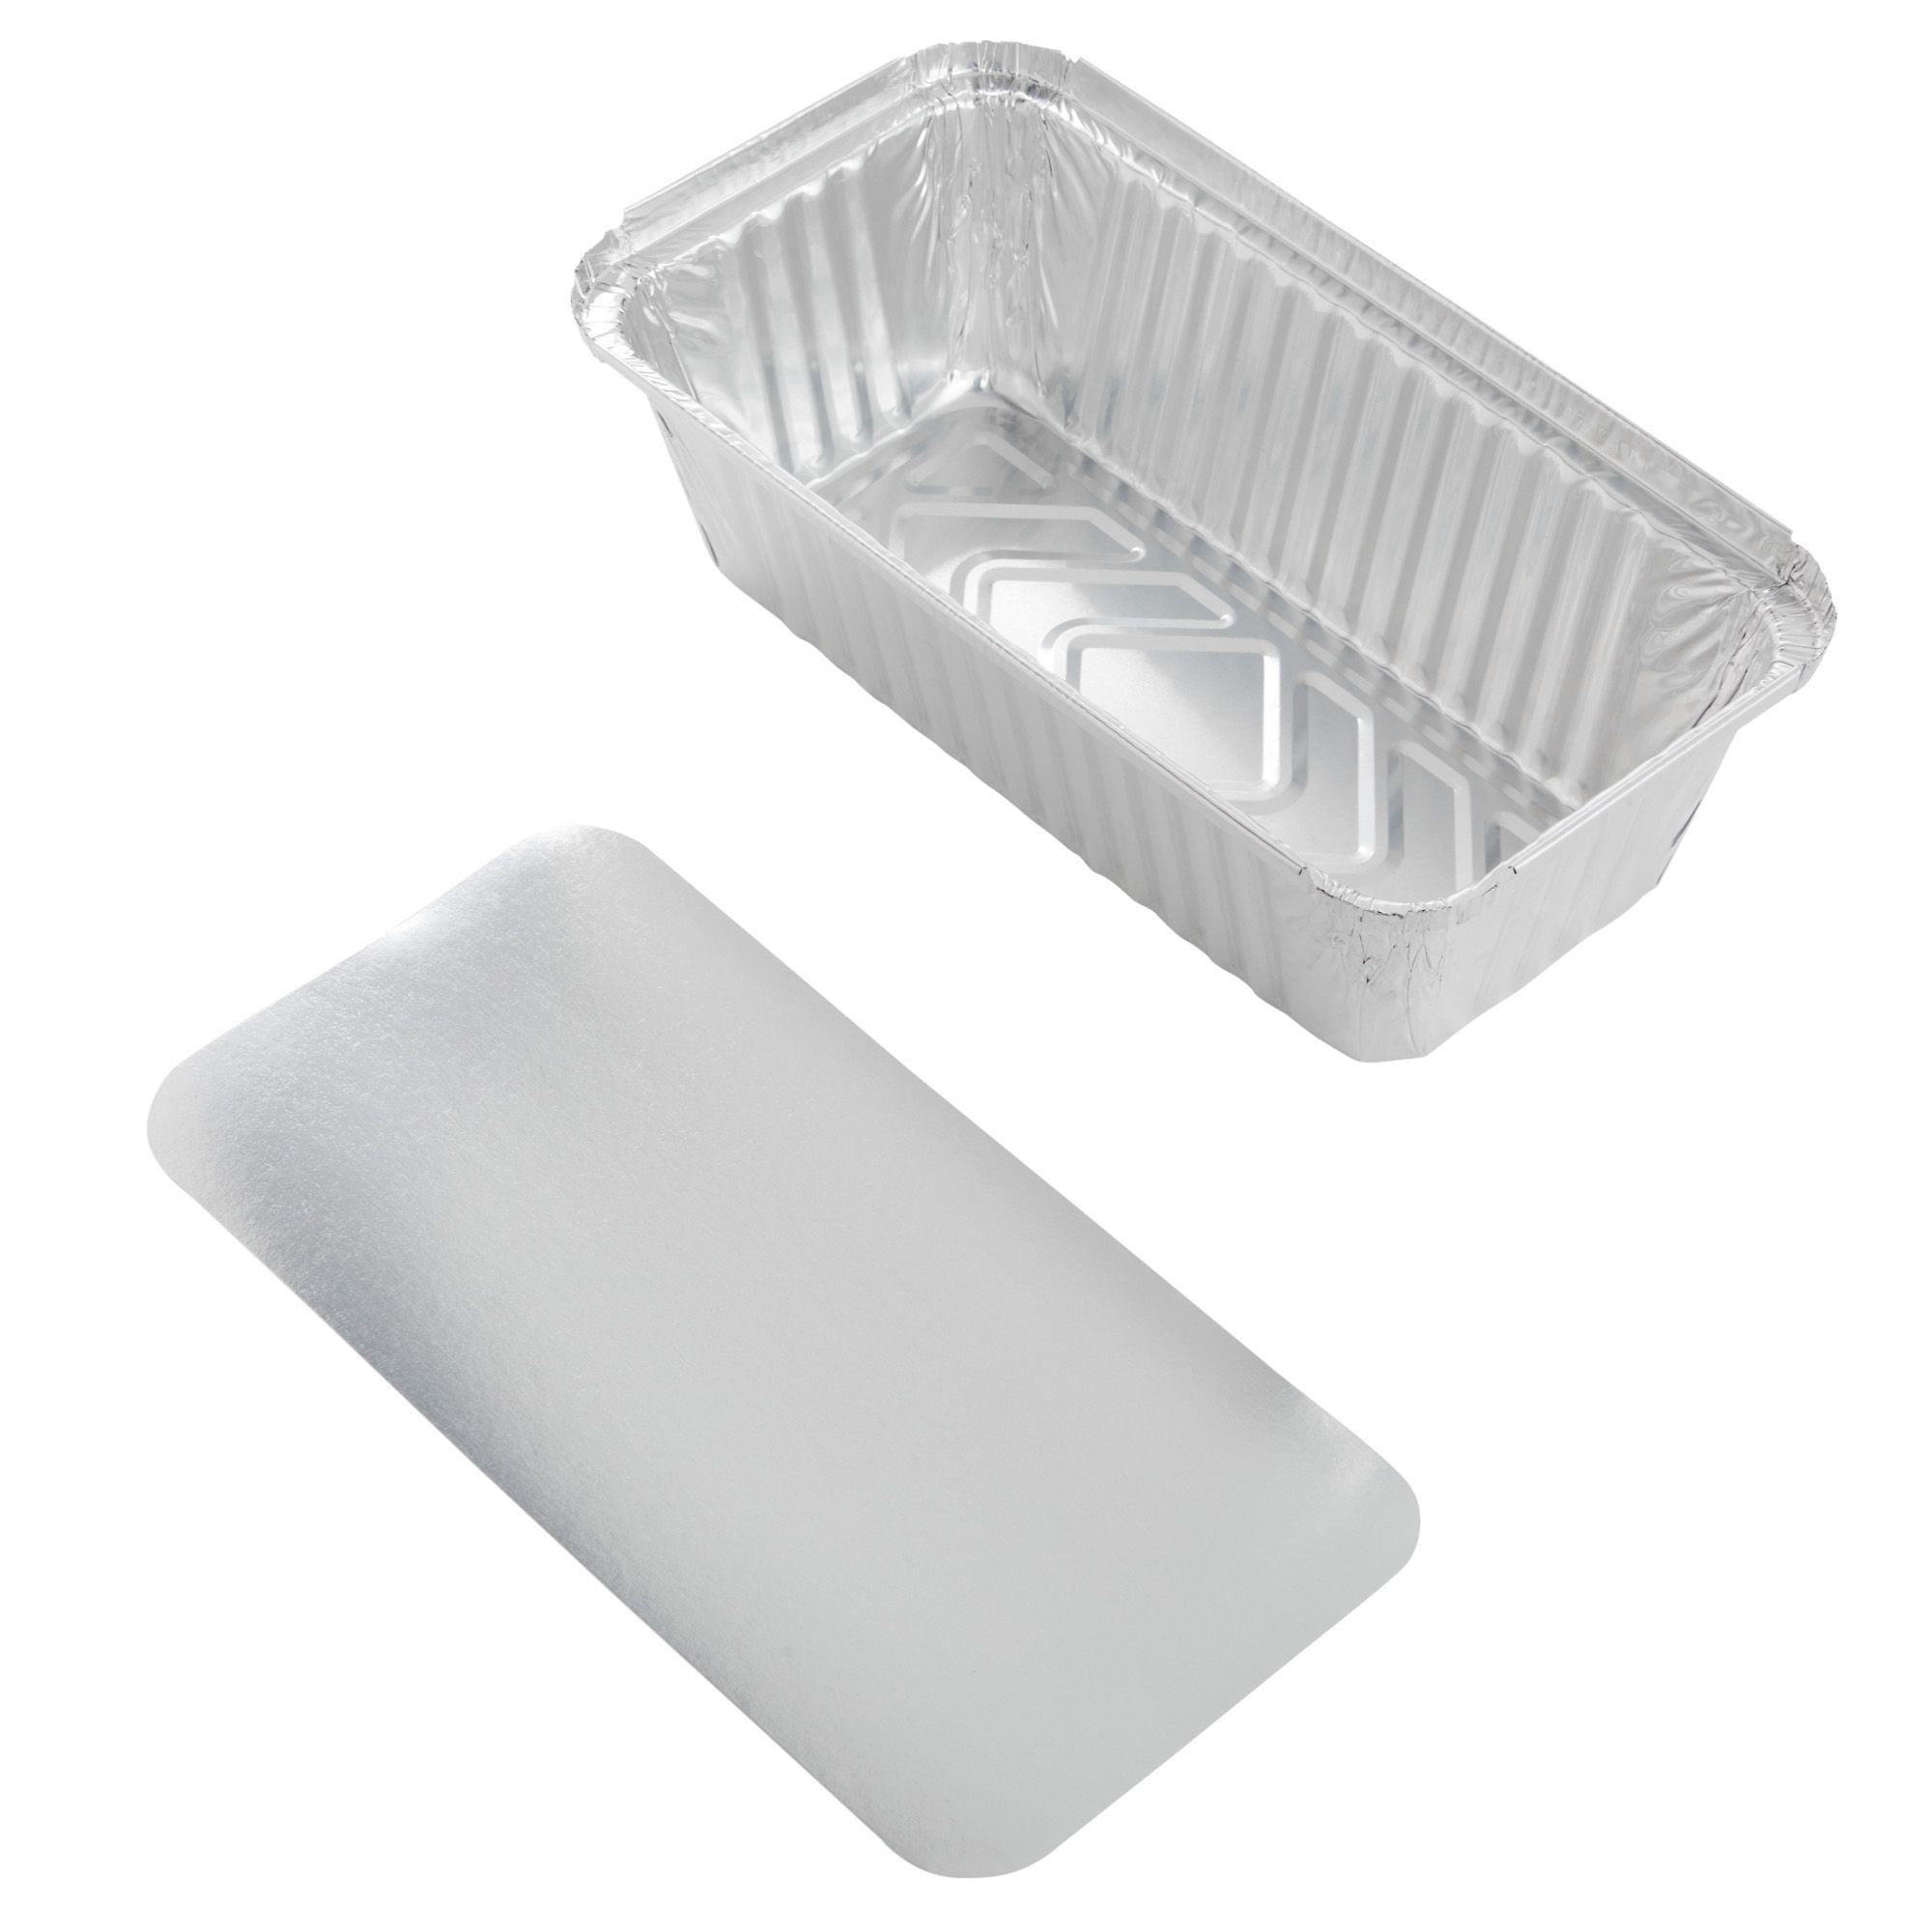 Handi-Foil 2 lb. Aluminum Foil Loaf Bread Pan 50/PK